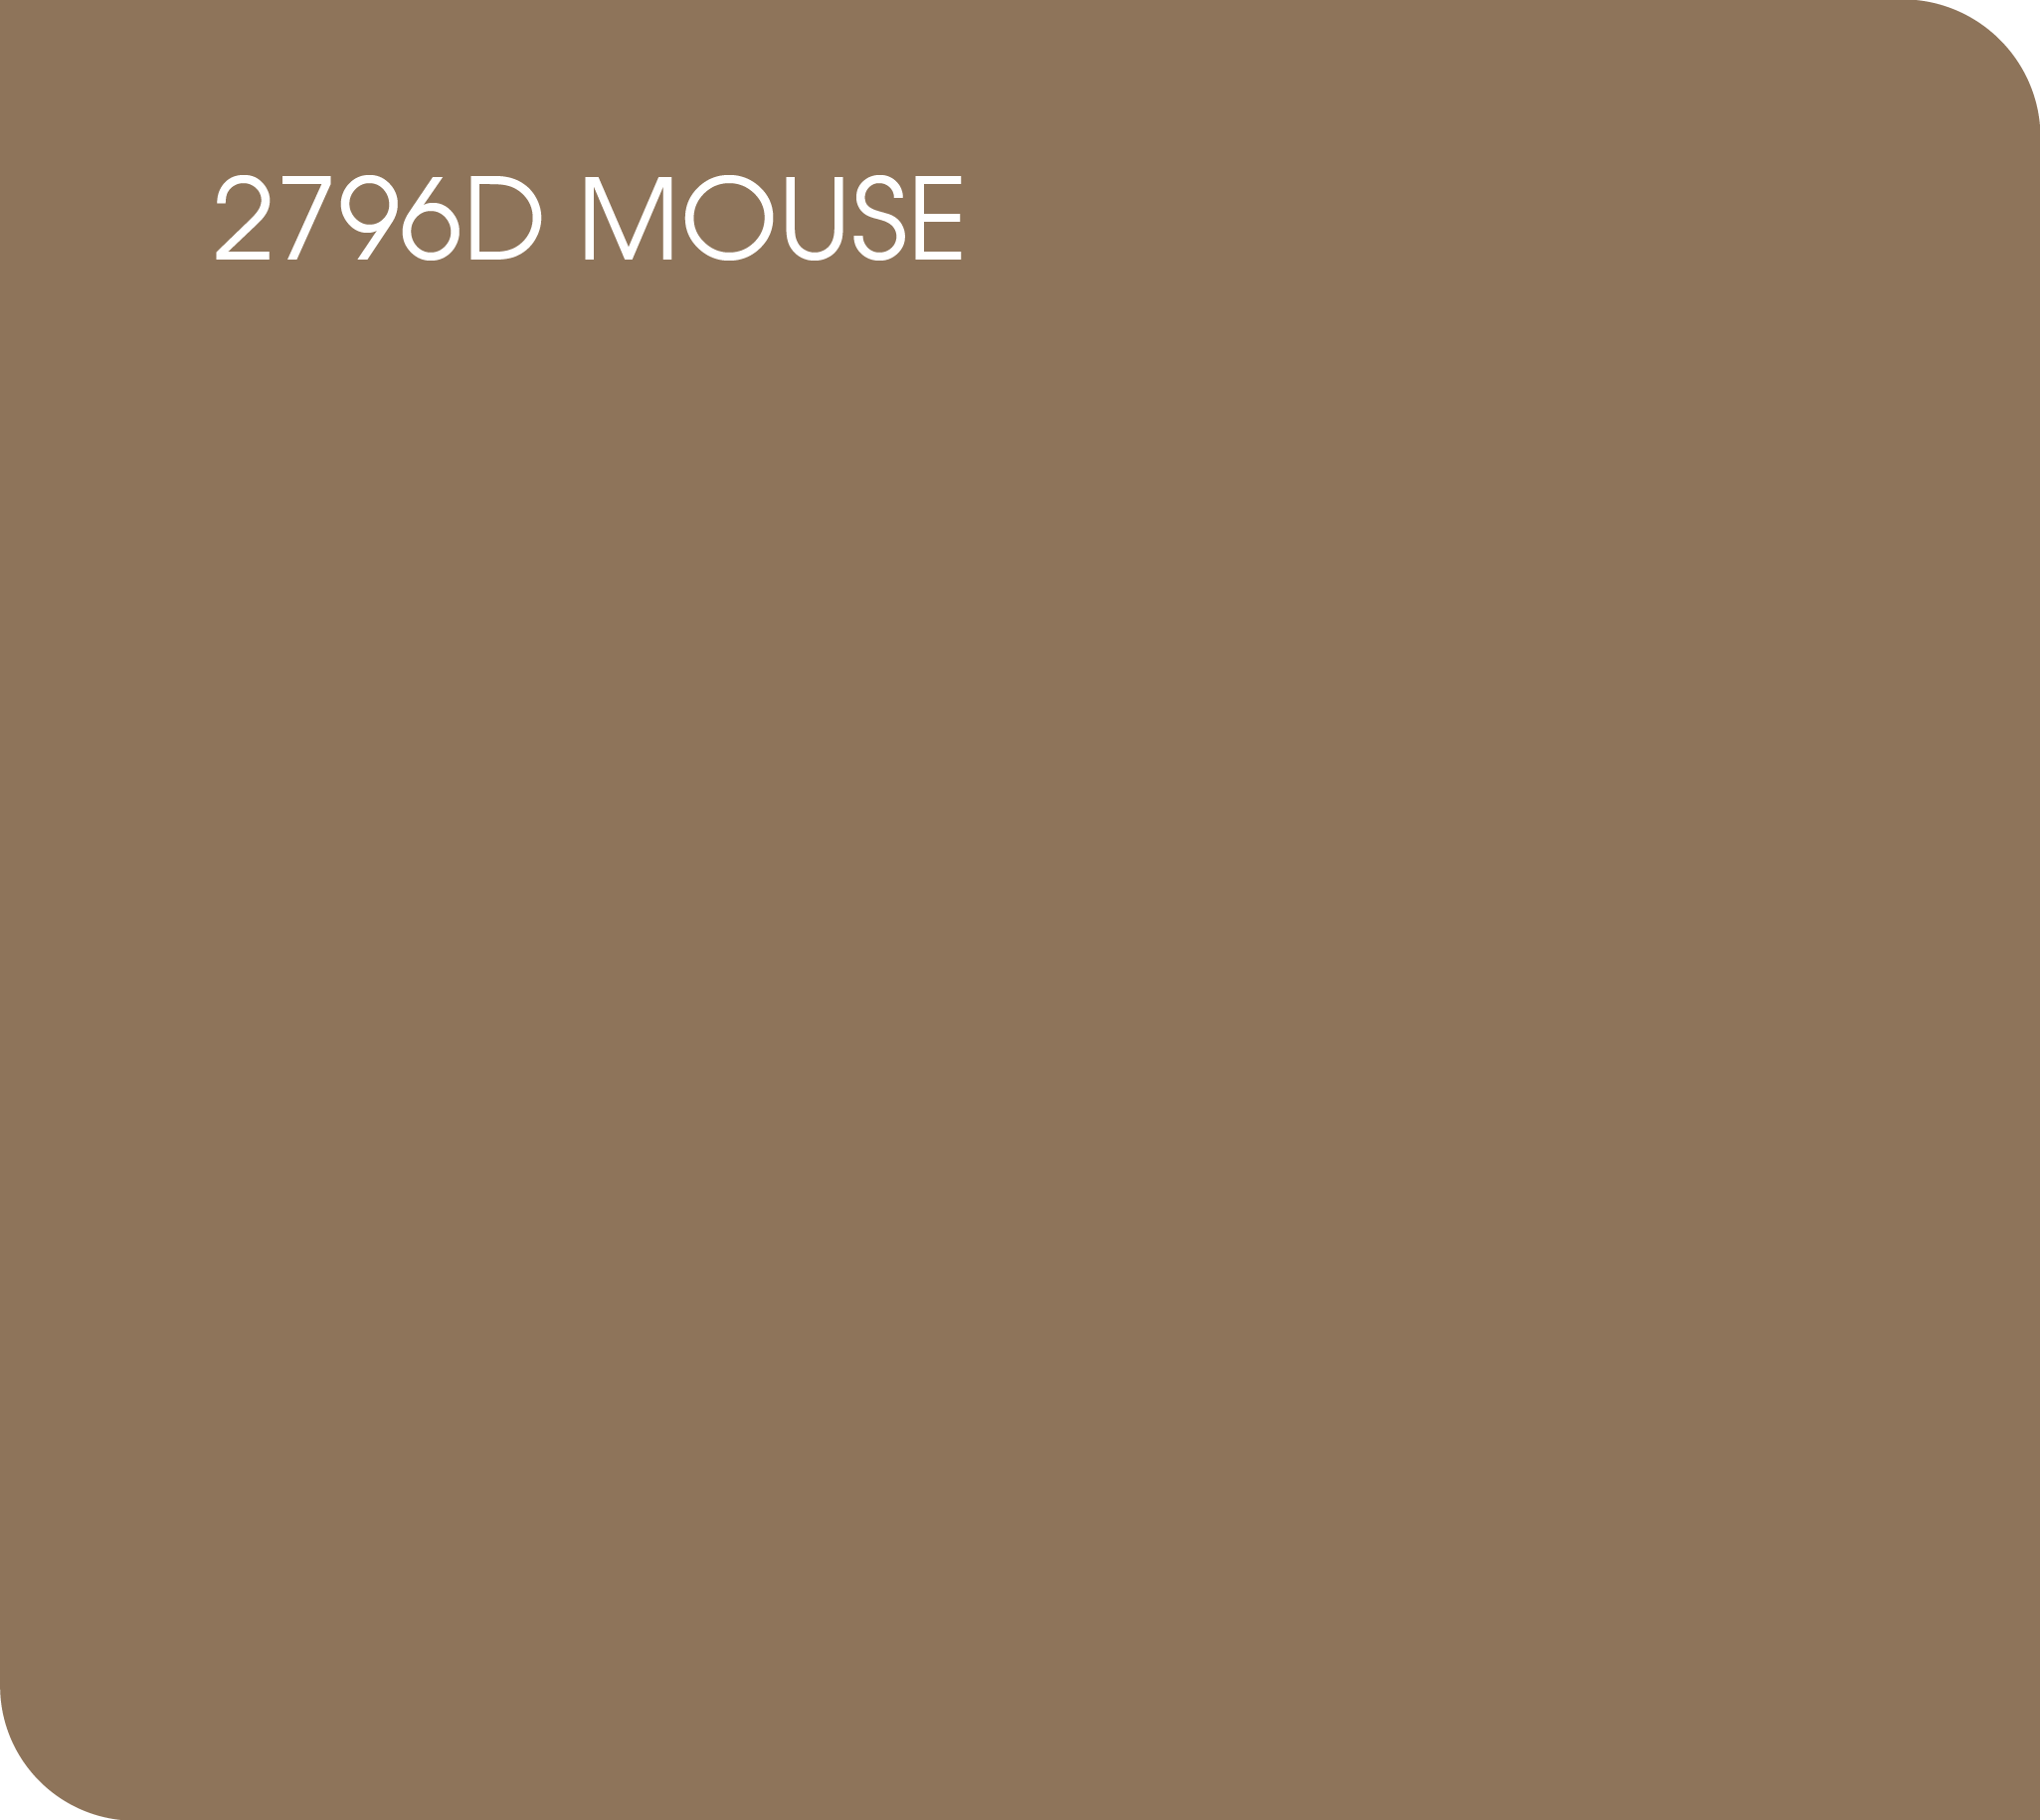 mouse 2796D